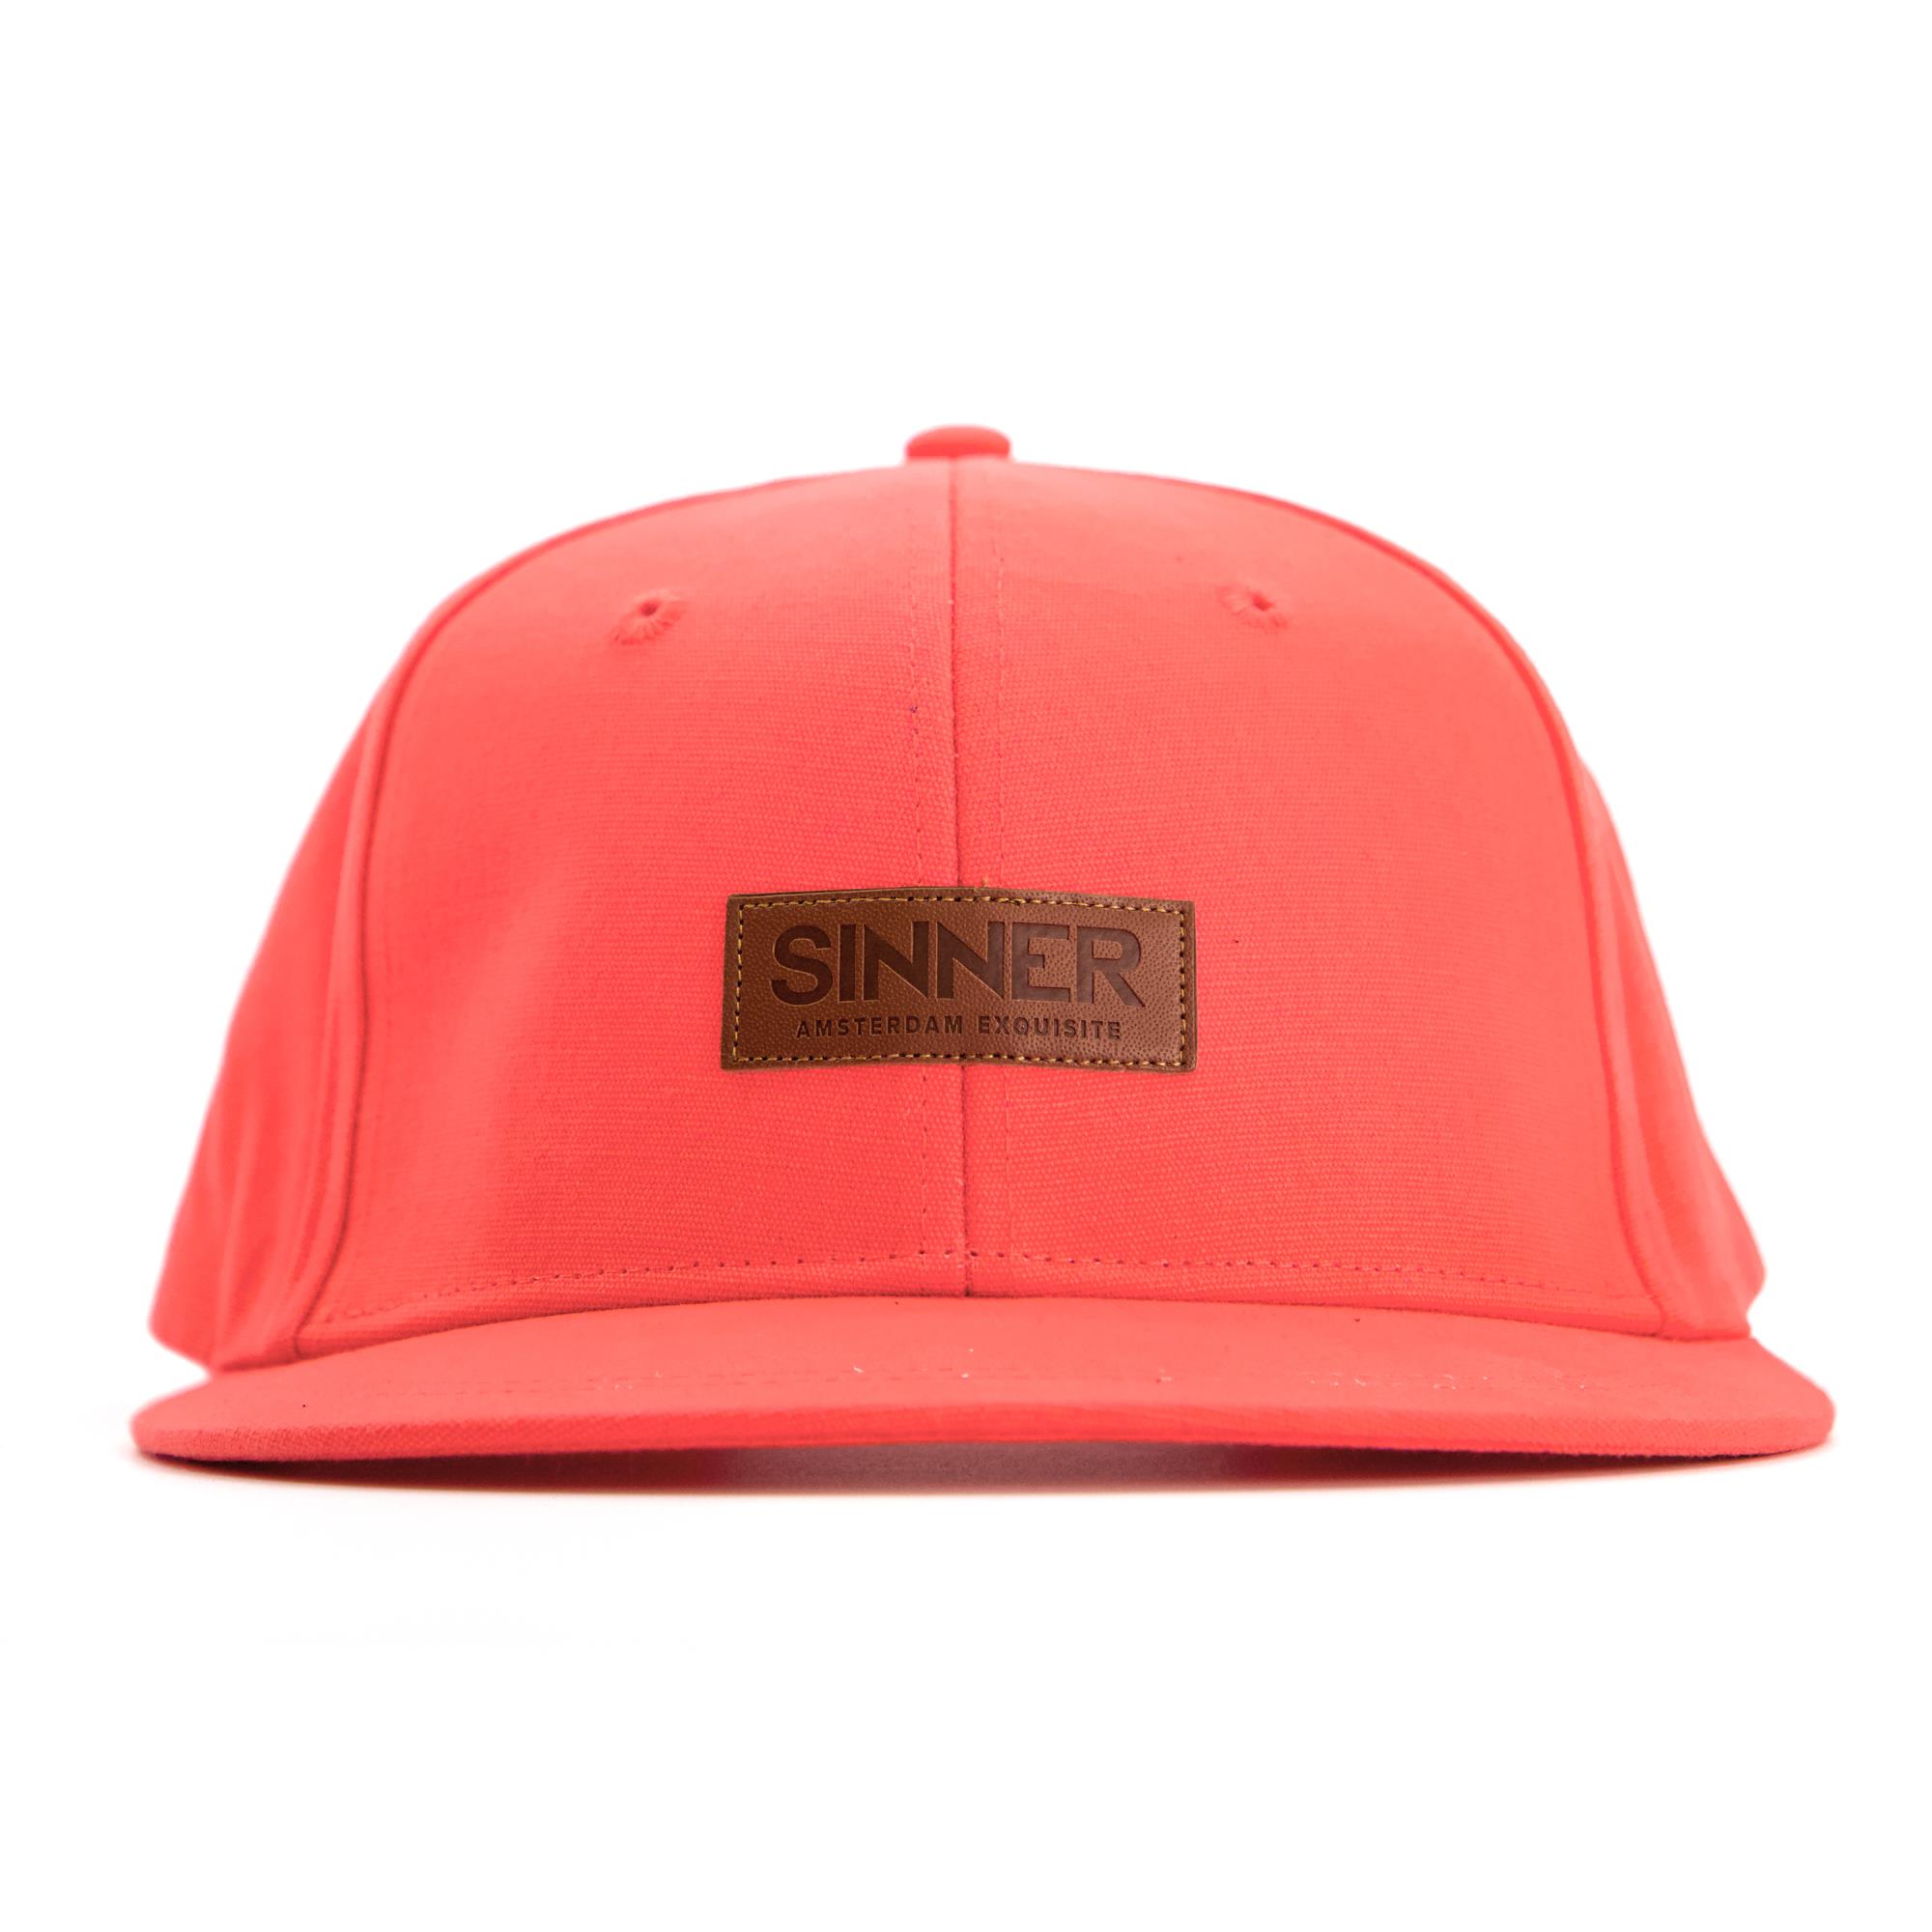 Sinner Sinner Amsterdam Exquisite Cap - Neon Koraal